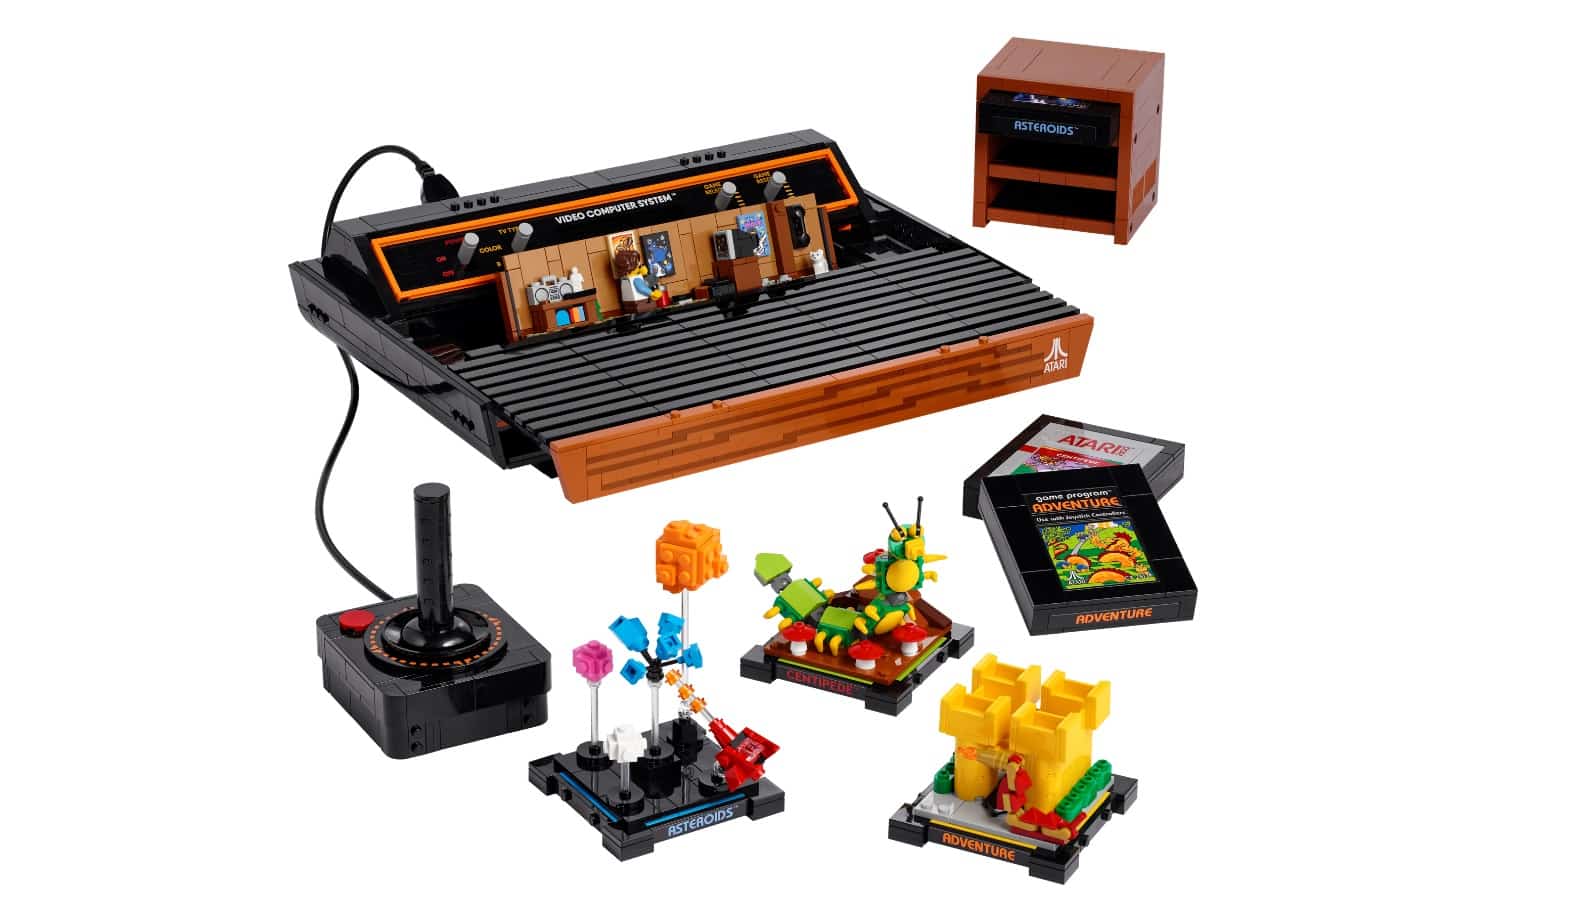 LEGO: Nachbau des legendären Atari 2600 ab dem 1. August 2022 verfügbar